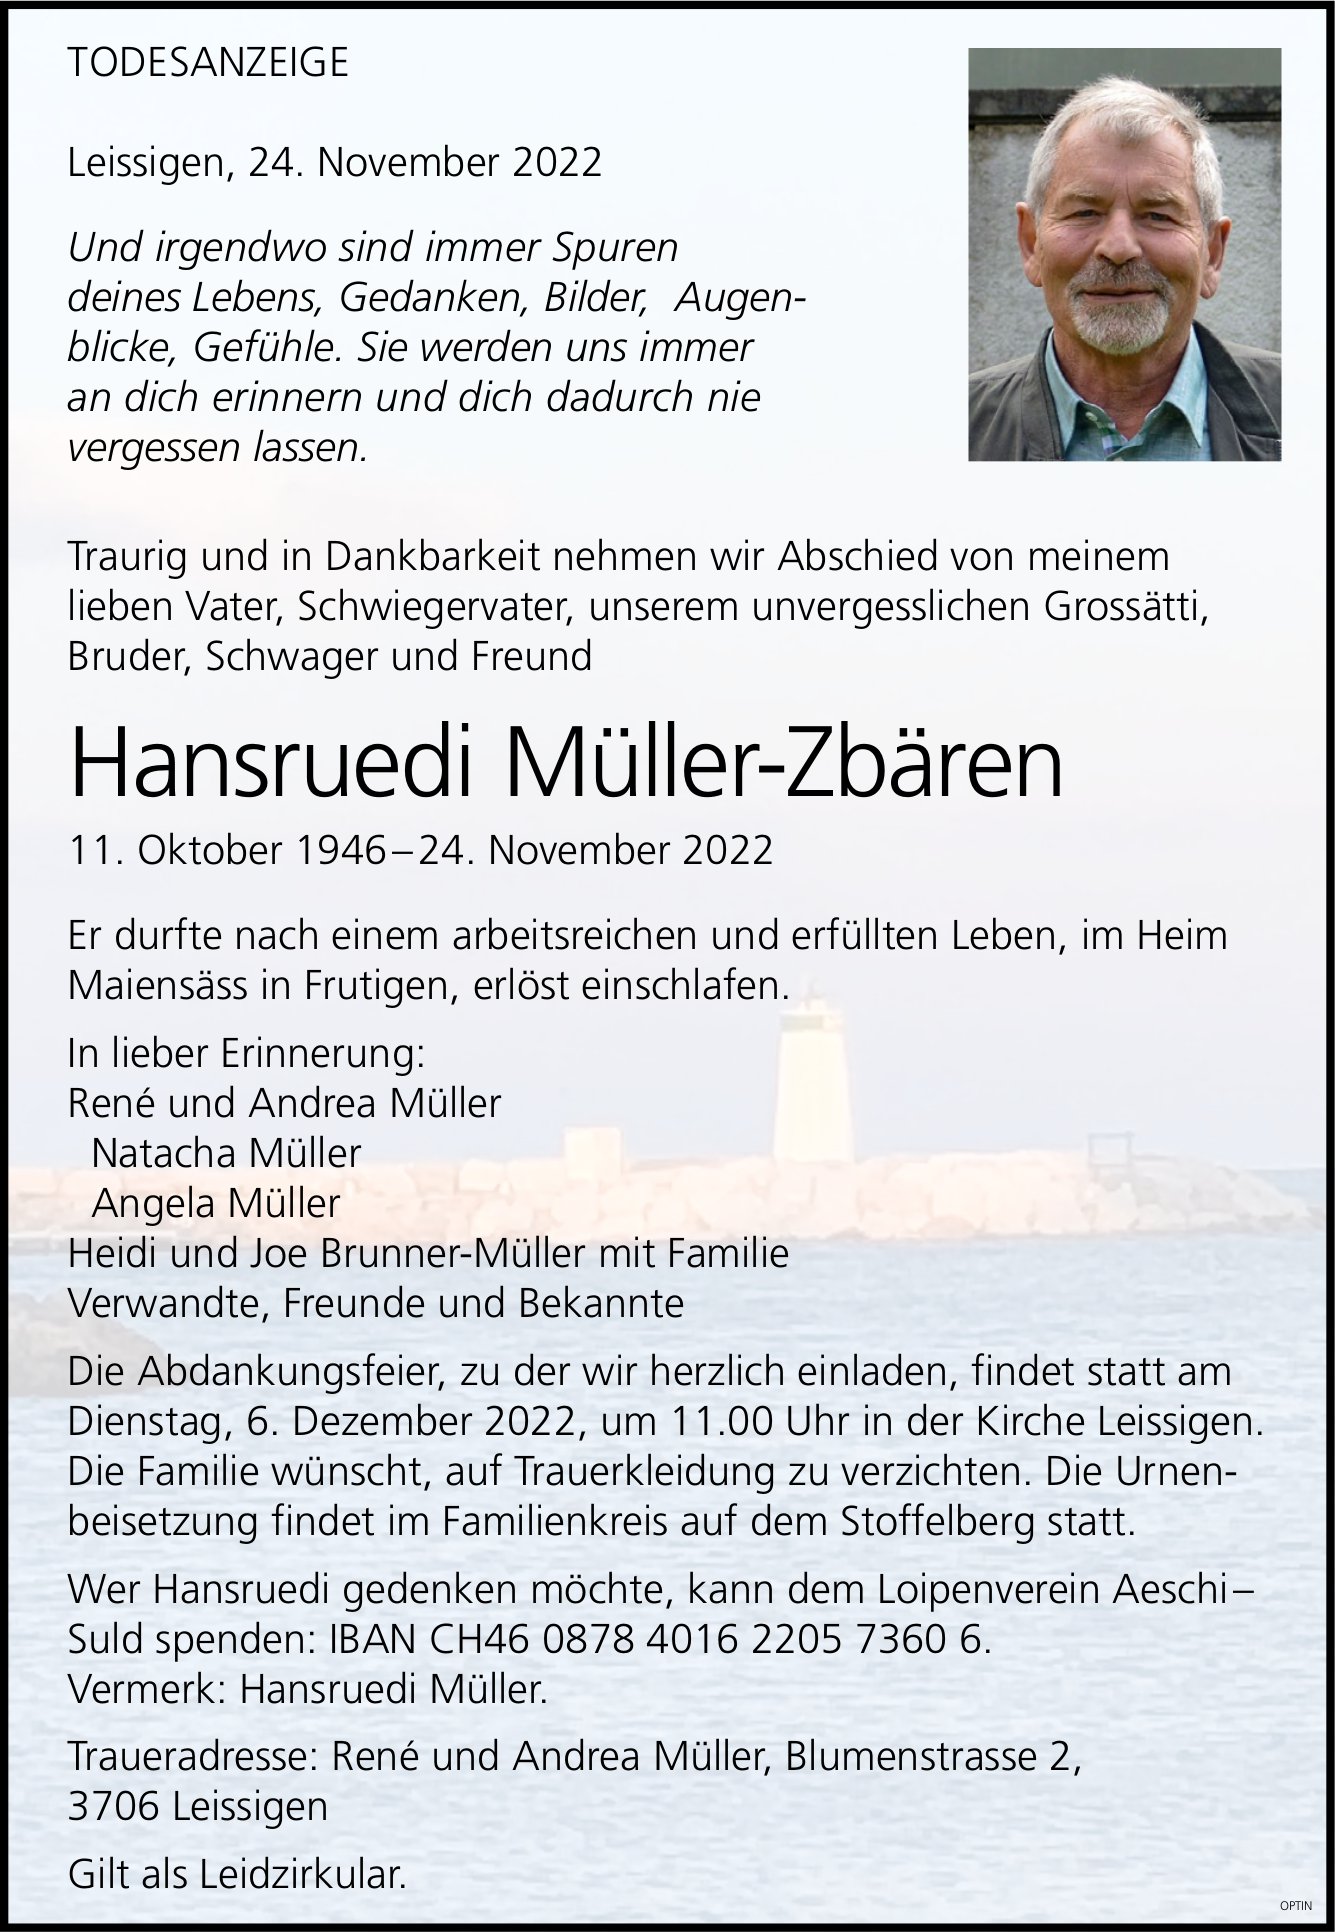 Hansruedi Müller-Zbären, November 2022 / TA